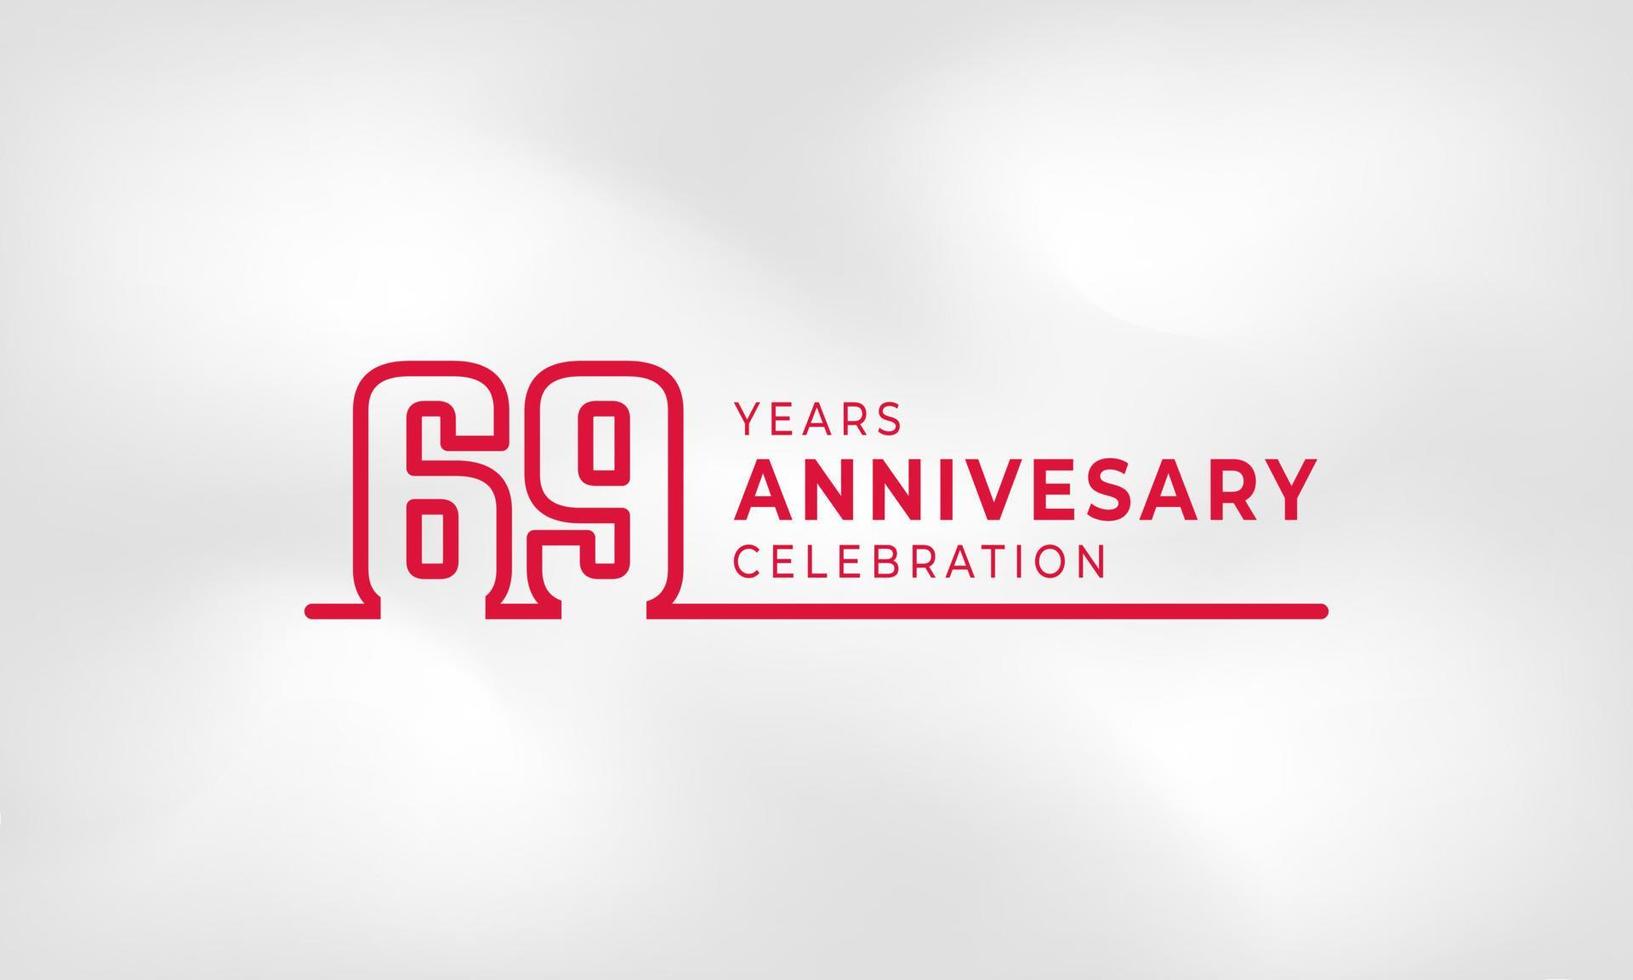 Celebração de aniversário de 69 anos vinculada ao contorno do logotipo cor vermelha para evento de celebração, casamento, cartão de felicitações e convite isolado no fundo de textura branca vetor